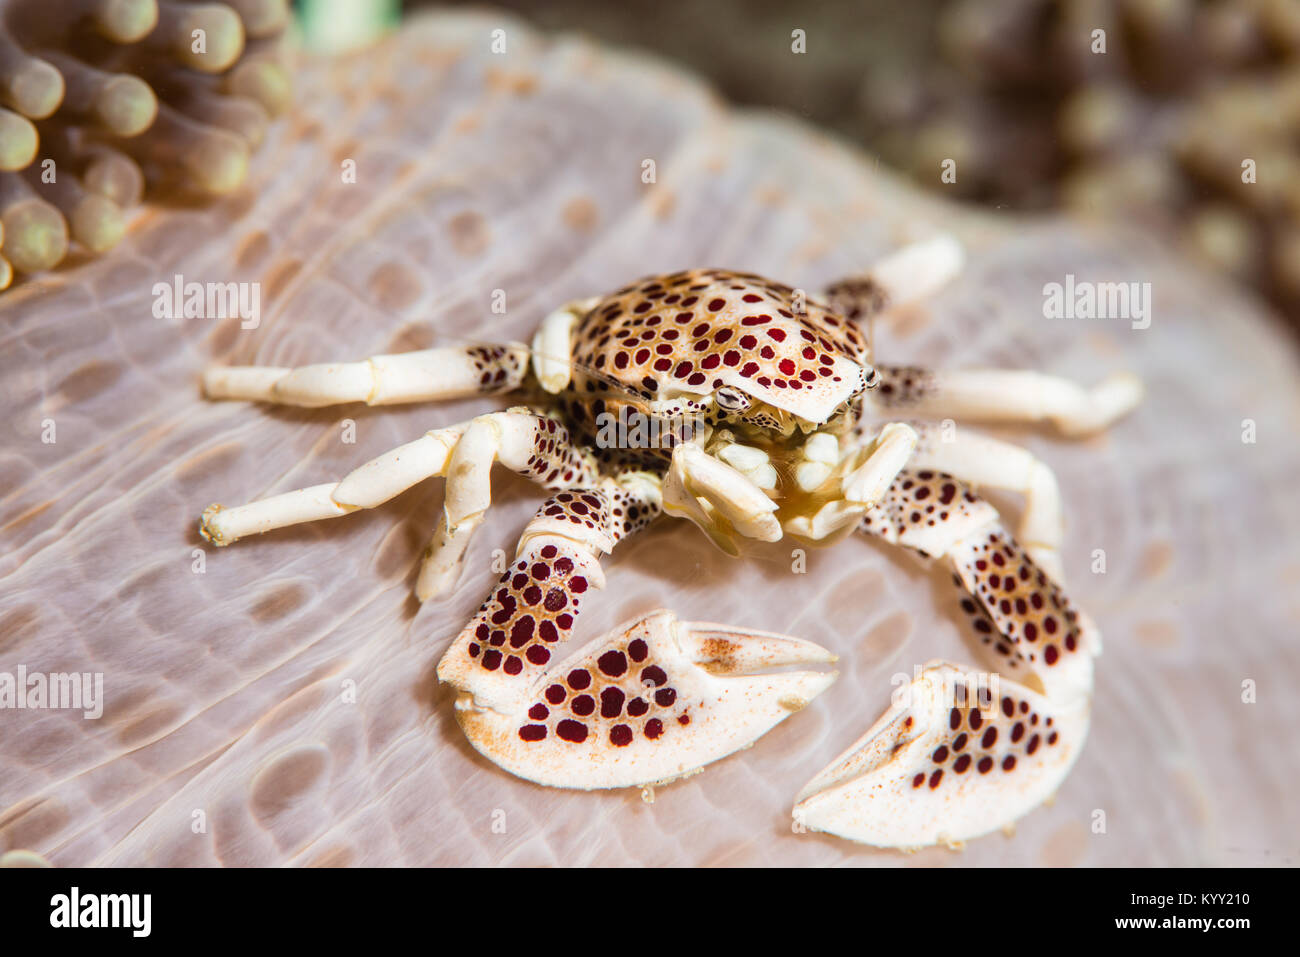 Porzellan Krabben in die Anemone, wo es blendet für Sicherheit und Schutz der Host von Parasiten, die eine symbiotische Beziehung Stockfoto